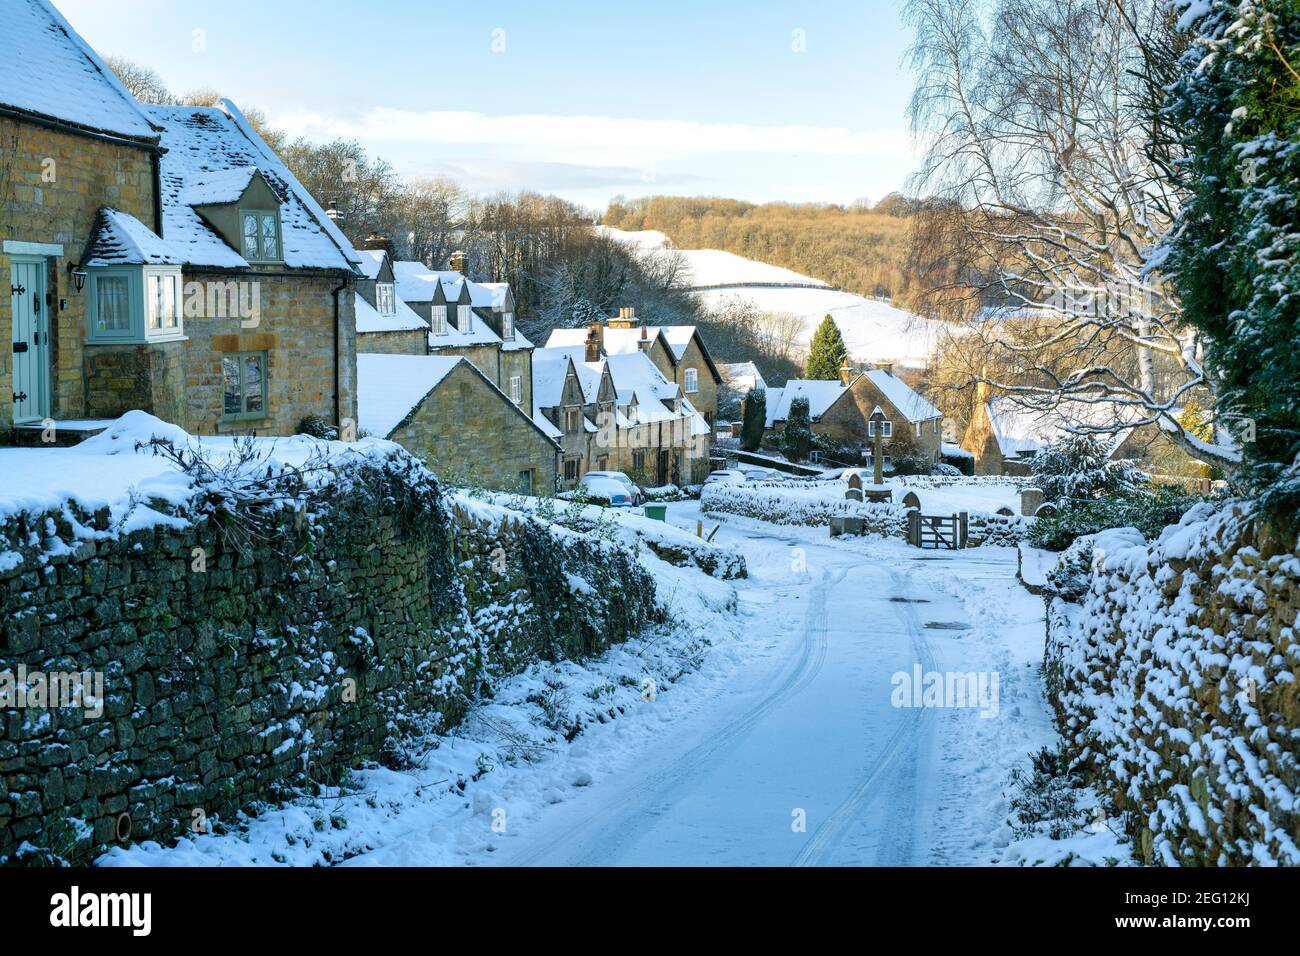 Cotswold cottages en pierre dans la neige en janvier. Snowshill, Cotswolds, Gloucestershire, Angleterre Banque D'Images